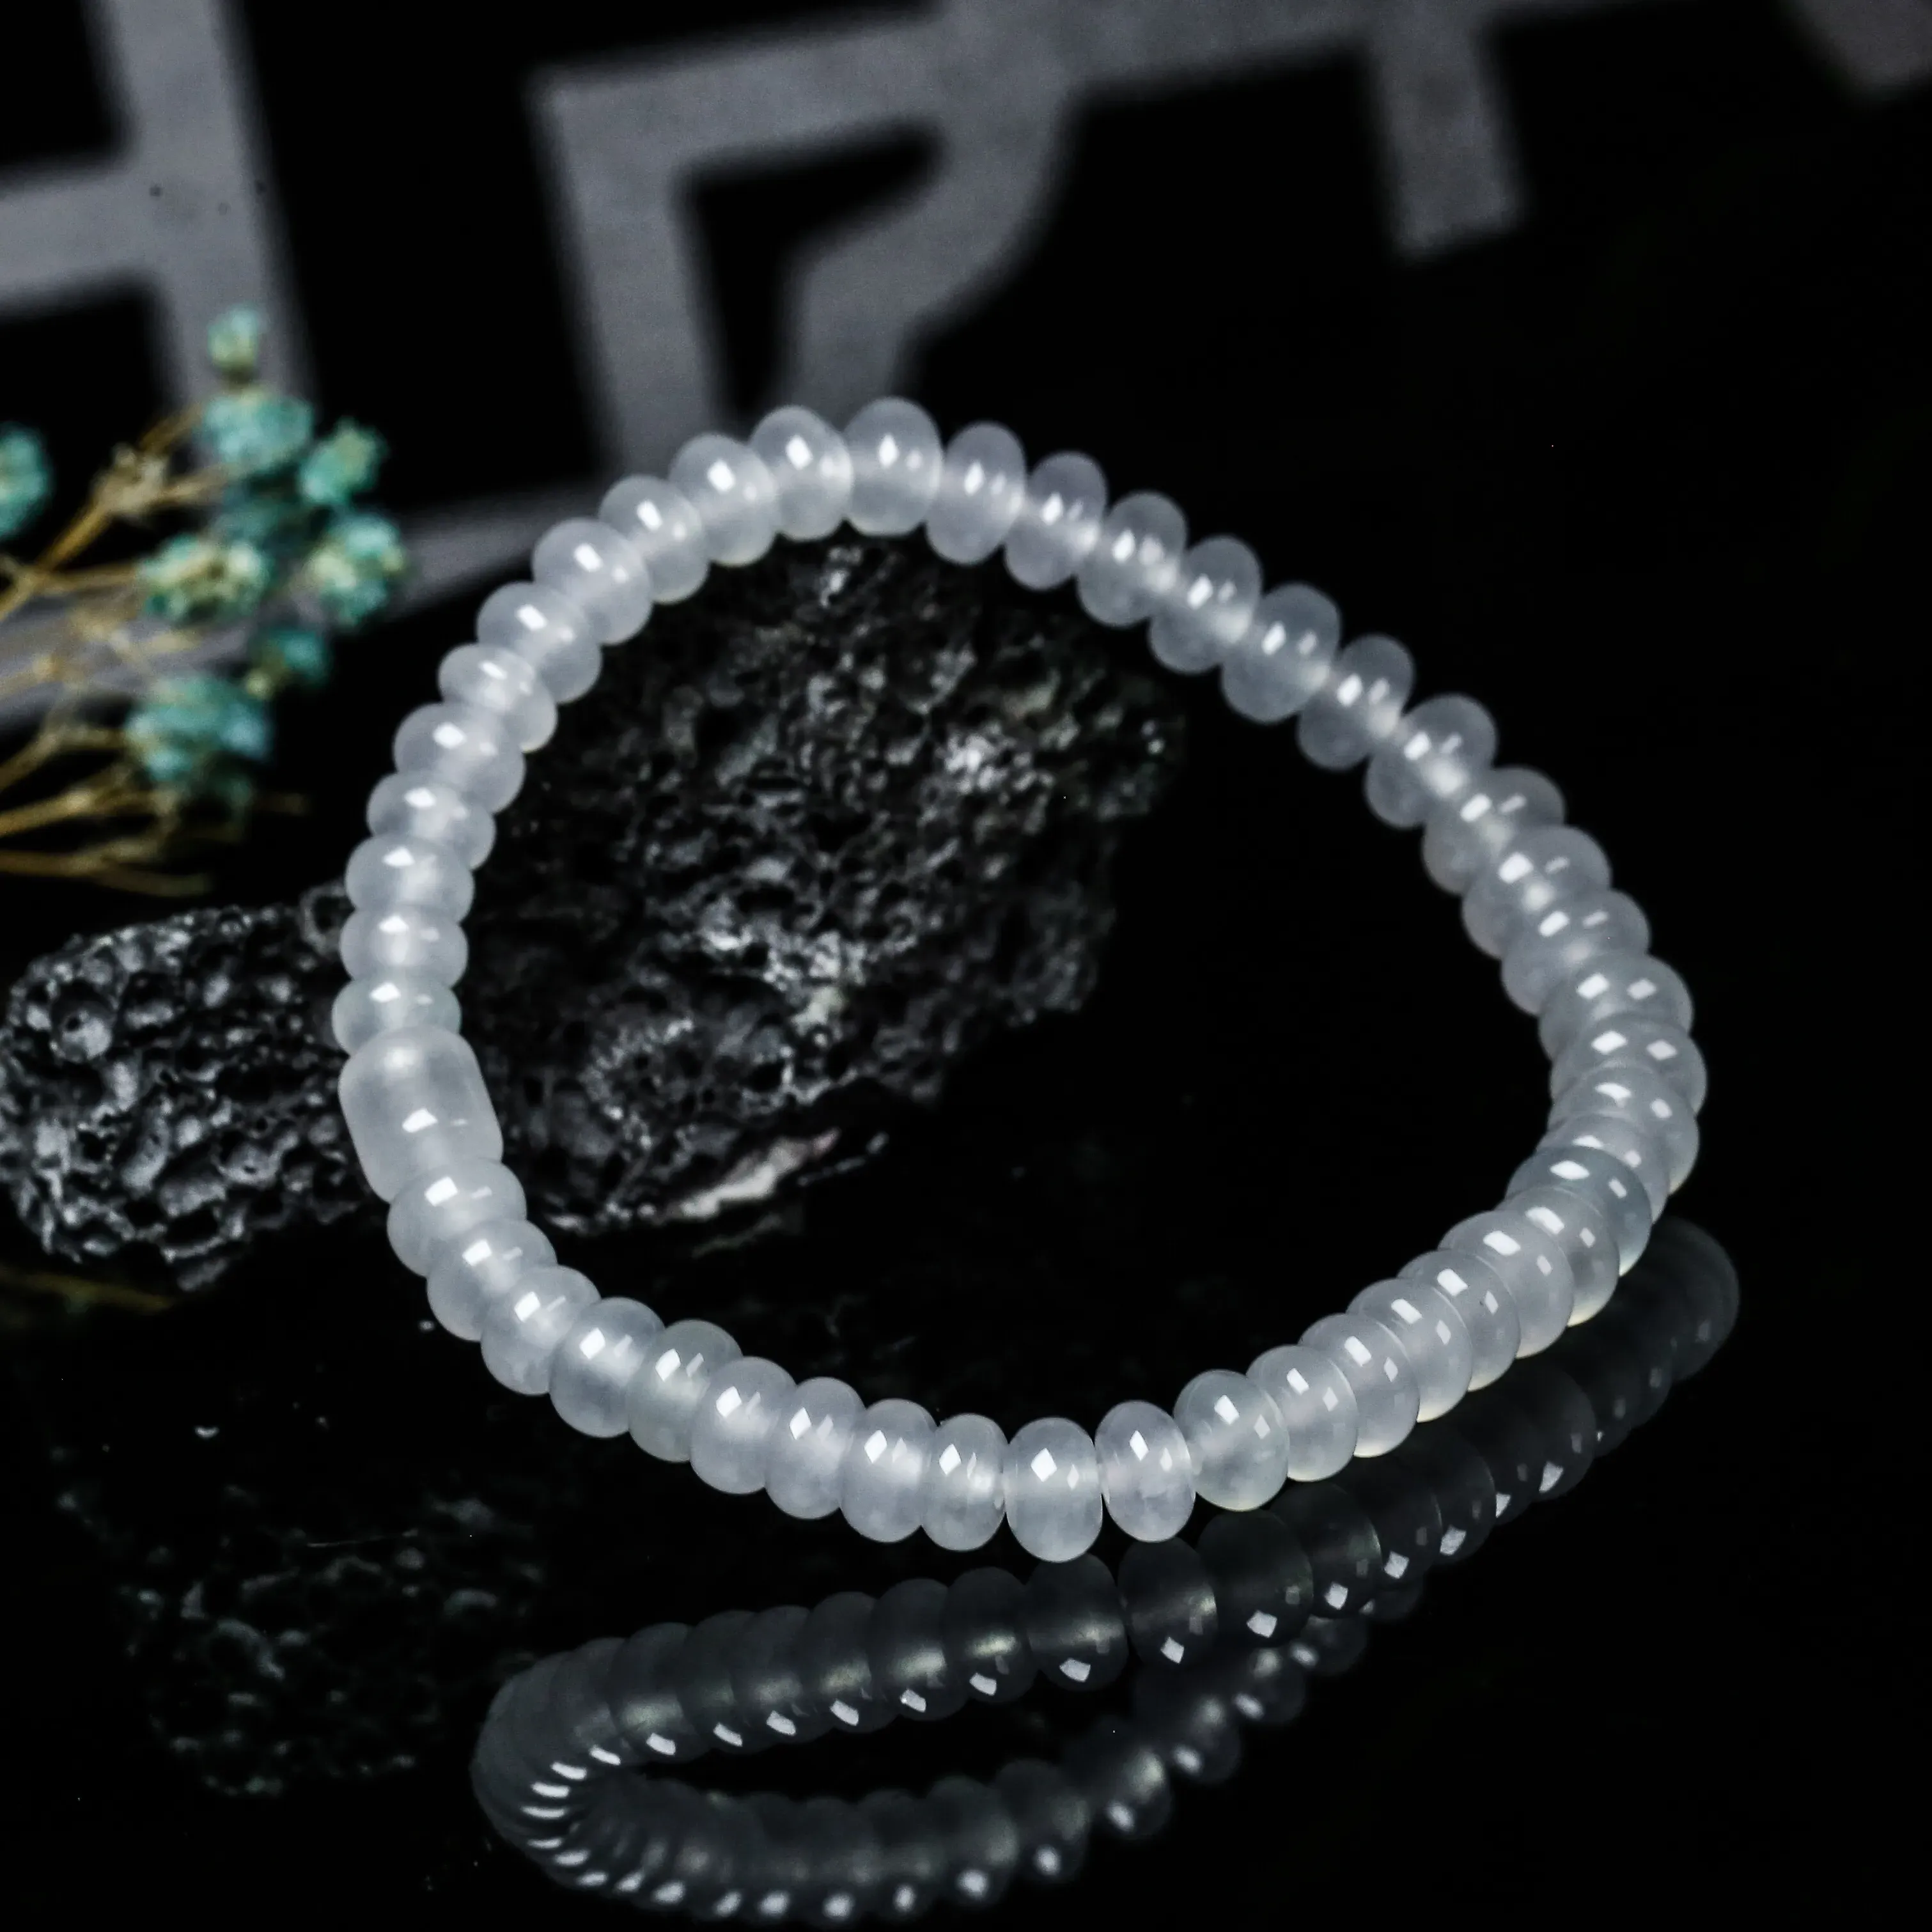 推荐冰种珠子翡翠手串。共46颗珠子，取其中一颗珠尺寸大约6.9*4mm，冰透水润，质地细腻。上手佩戴效果佳。